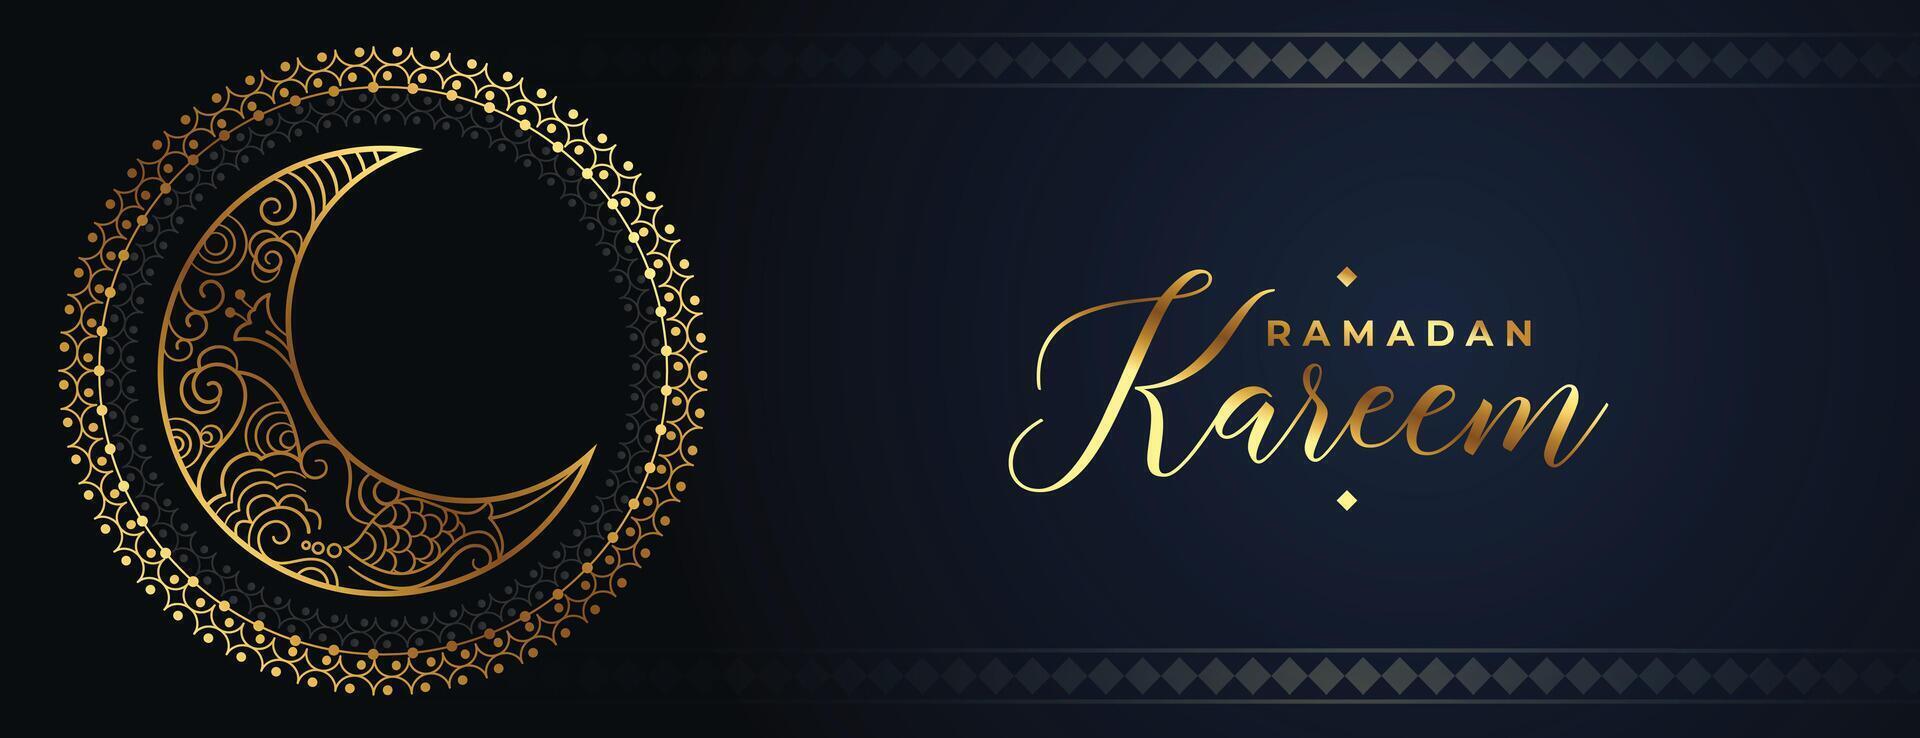 decorative ramadan kareem arabic style golden moon banner vector